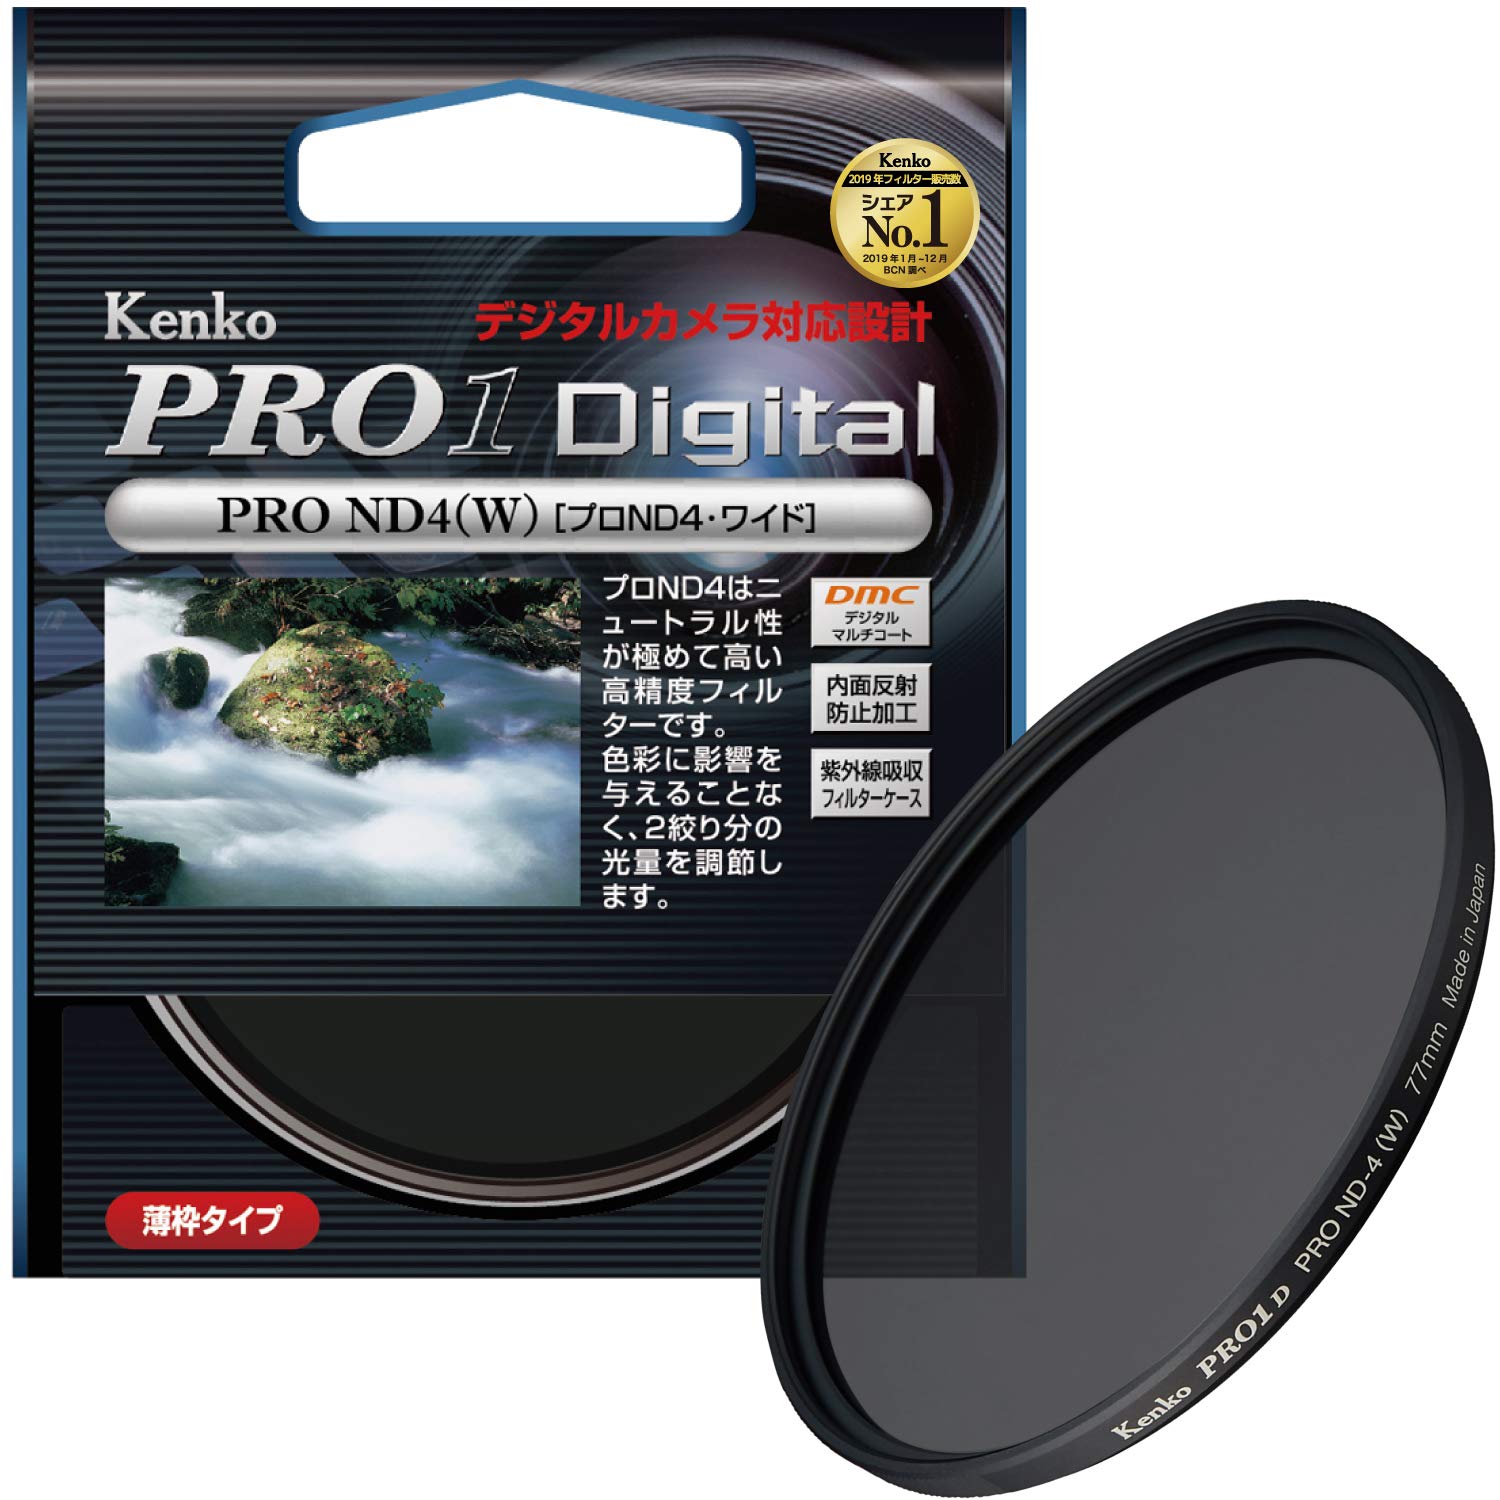 Kenko カメラ用フィルター PRO1D プロND4 (W) 77mm 光量調節用 277423